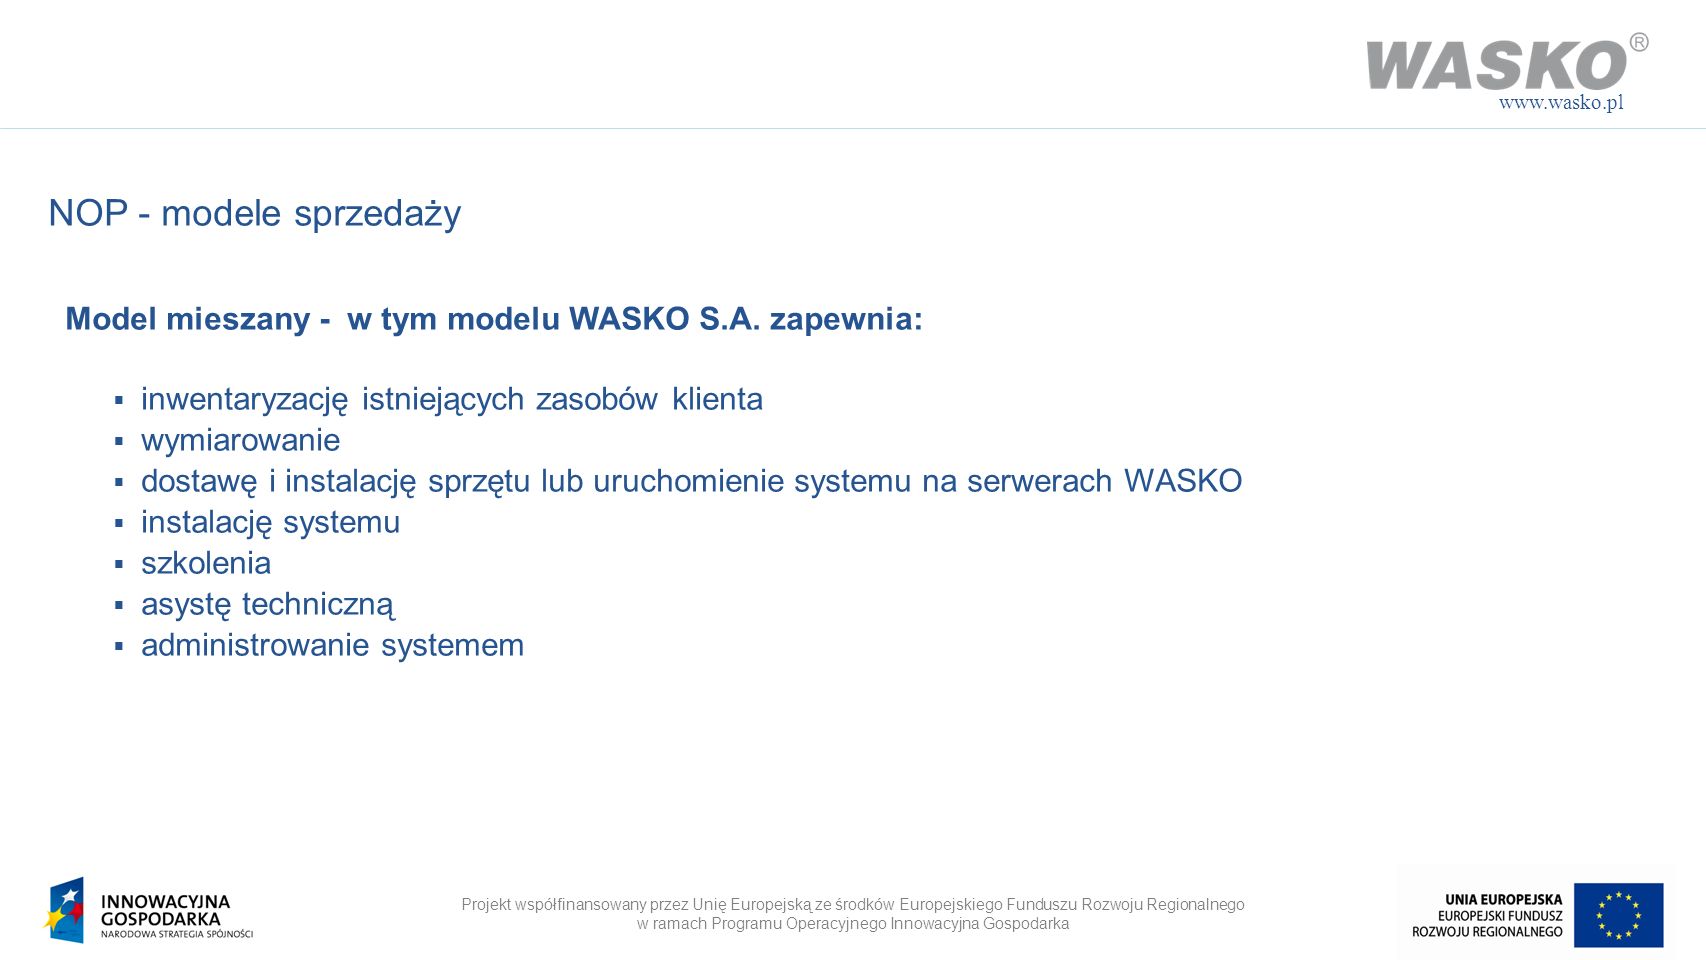 NOP - modele sprzedaży. Model mieszany - w tym modelu WASKO S.A. zapewnia: inwentaryzację istniejących zasobów klienta.